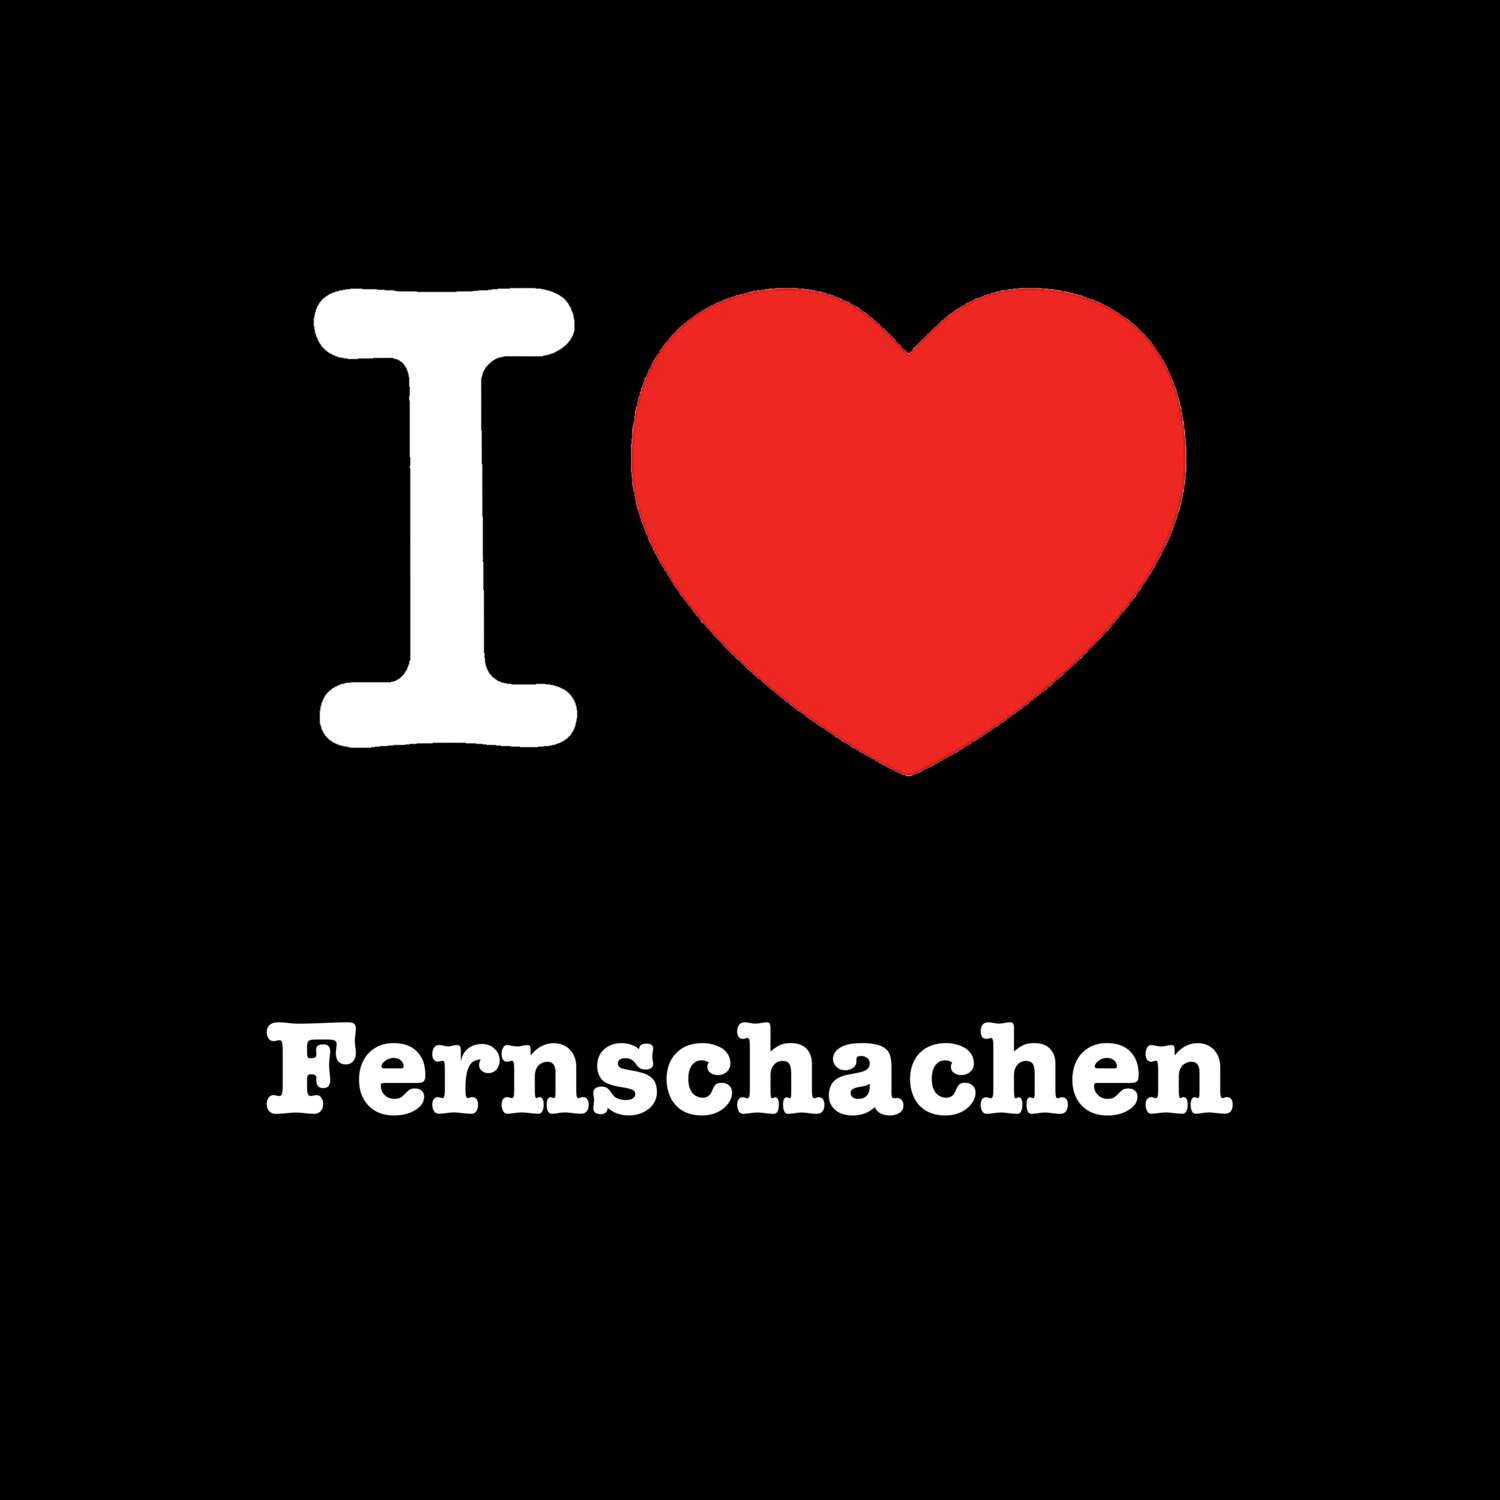 Fernschachen T-Shirt »I love«